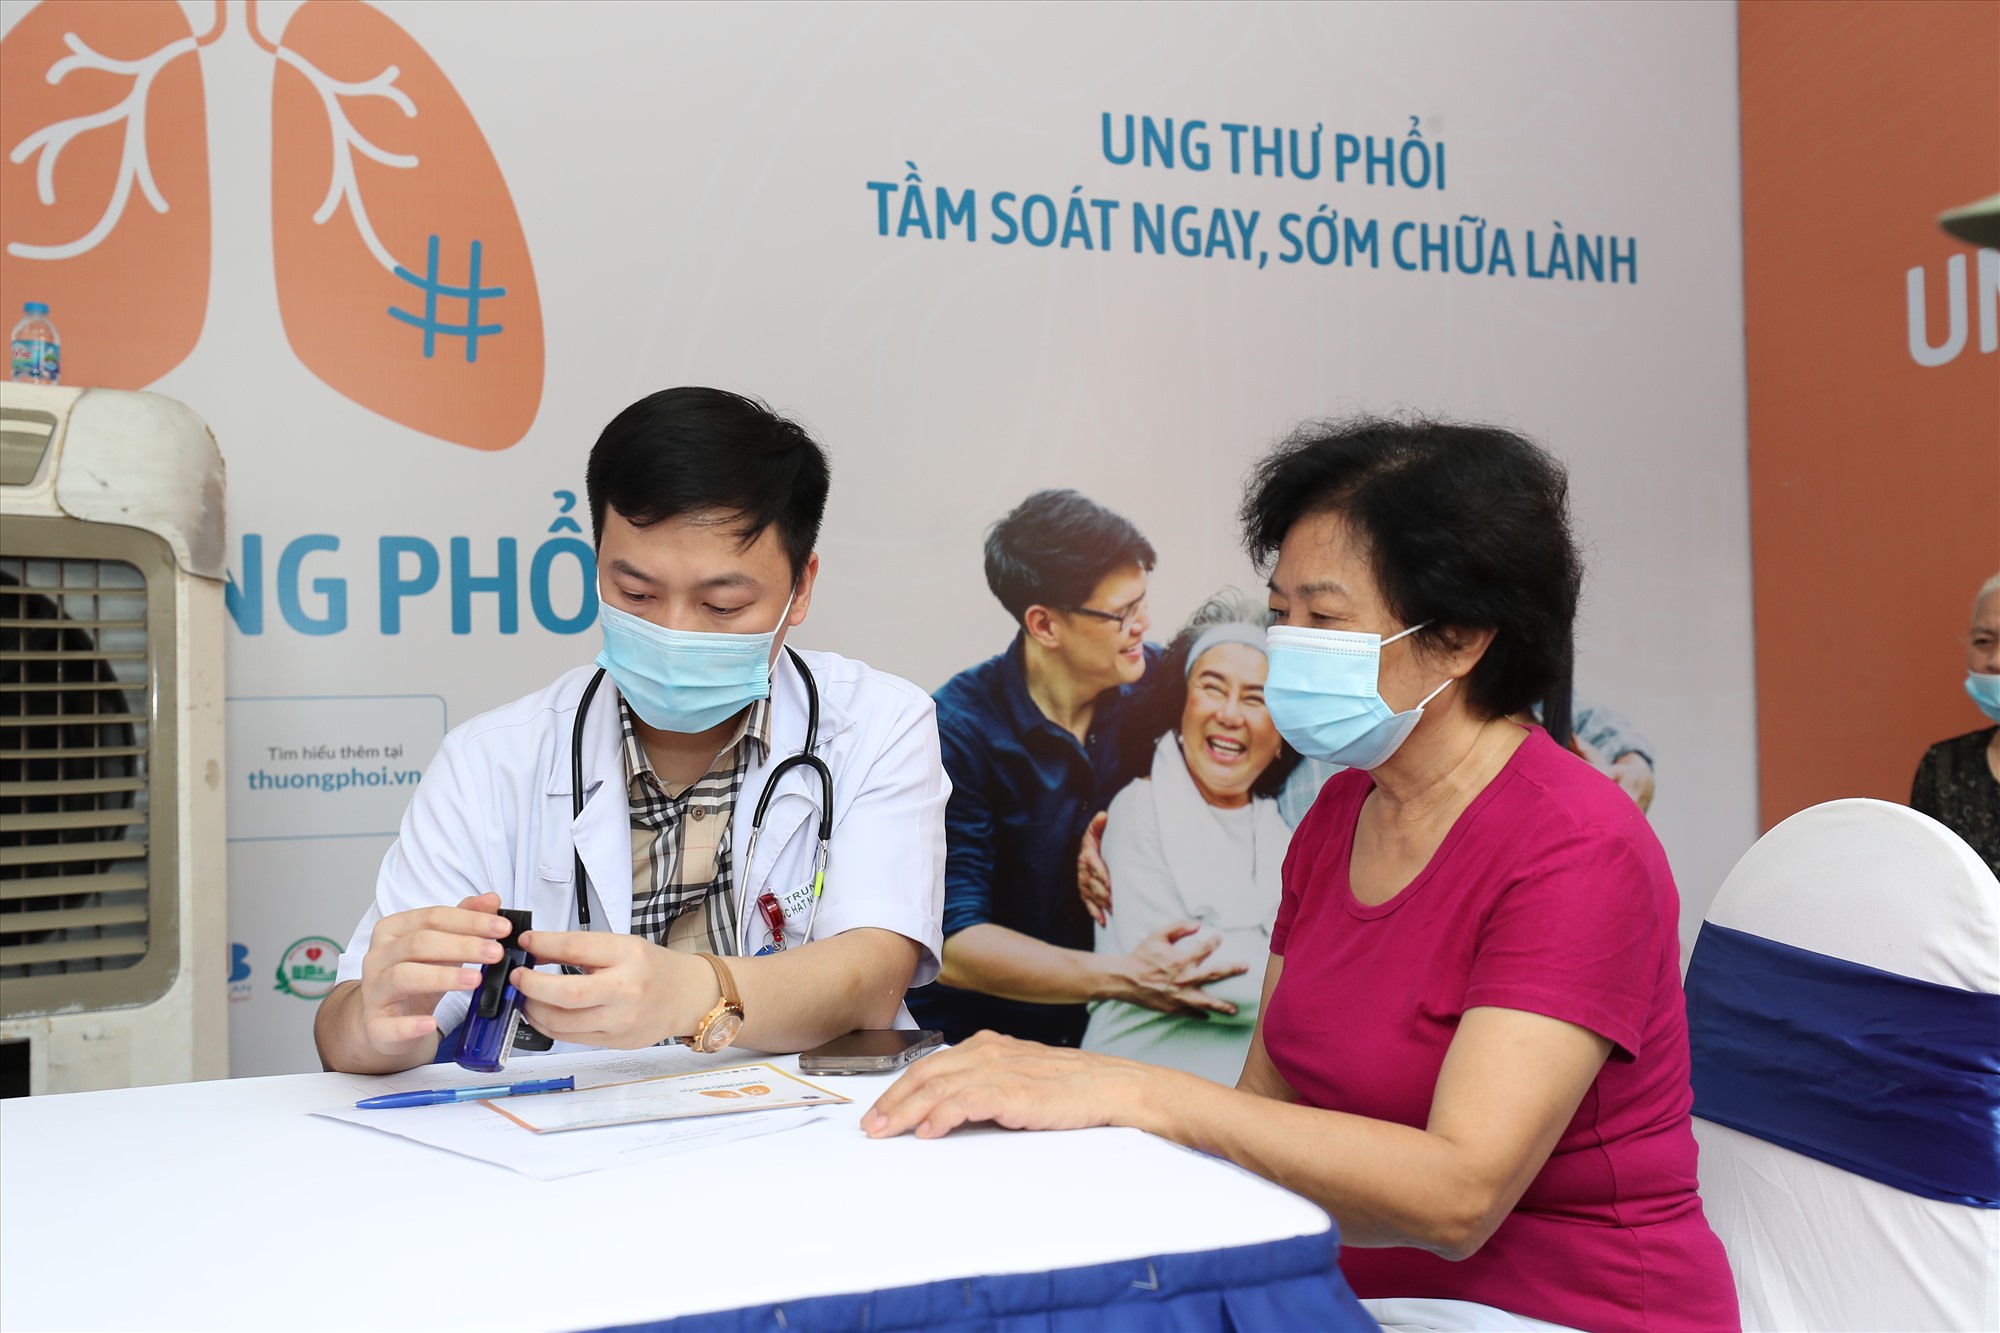 Ung thư phổi đứng thứ 2 về tỉ lệ mắc mới tại Việt Nam